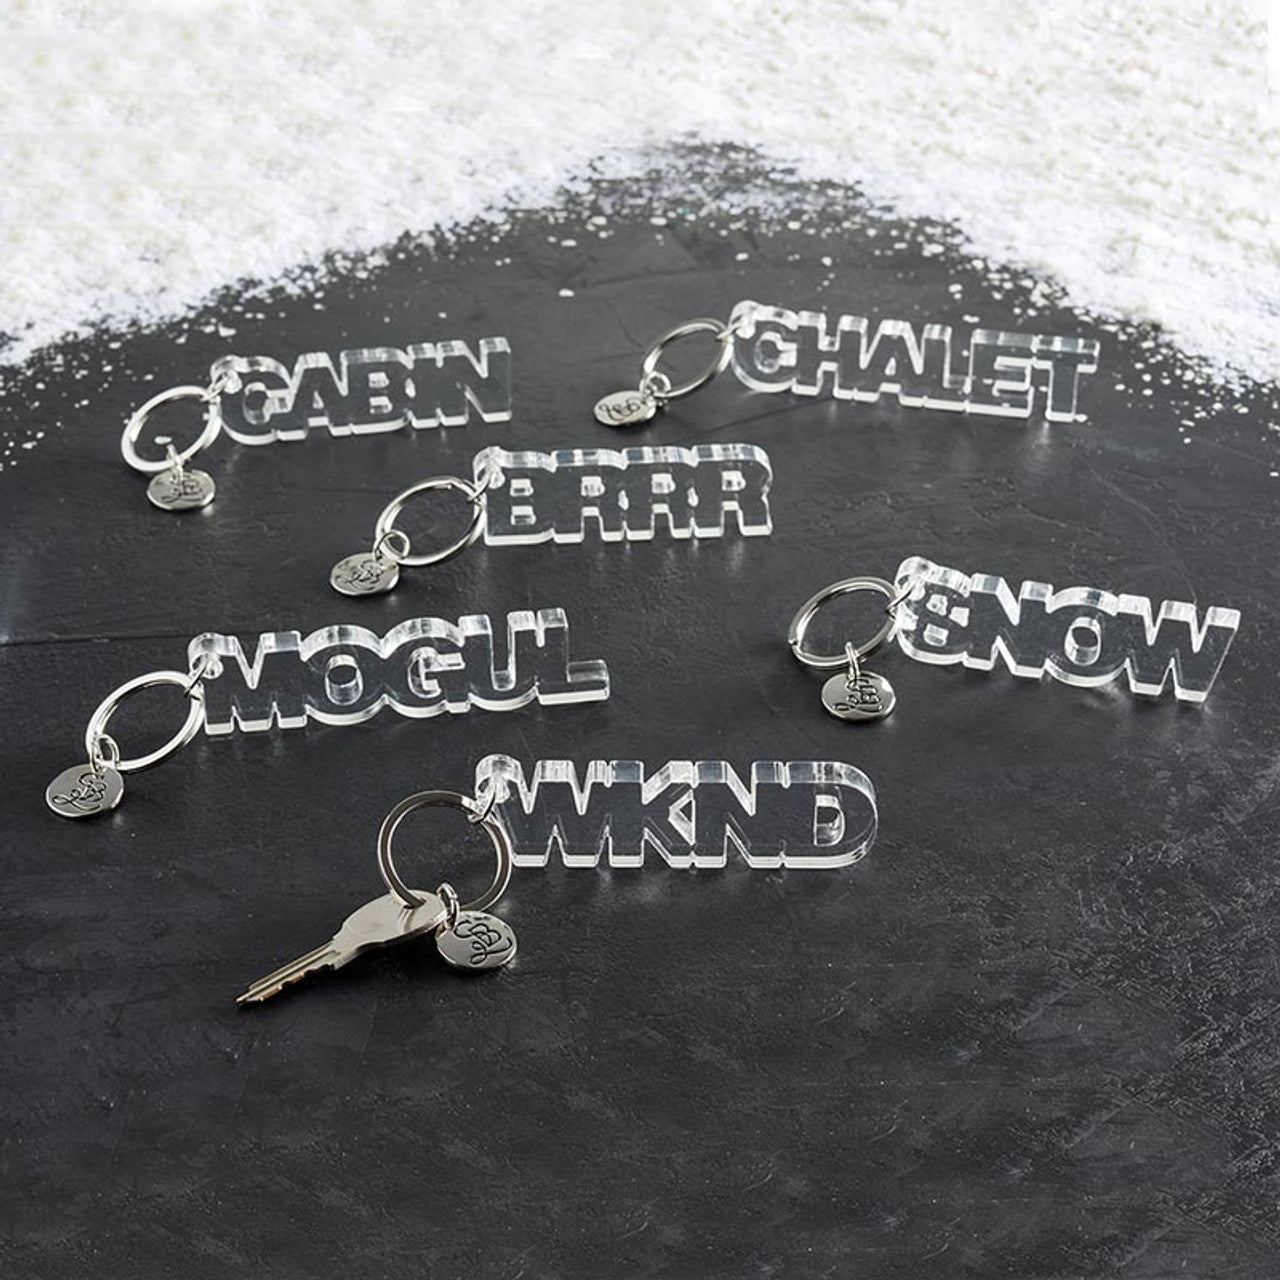 Mogul Acrylic Word Key Chain | Clear Word Shaped Keyholder